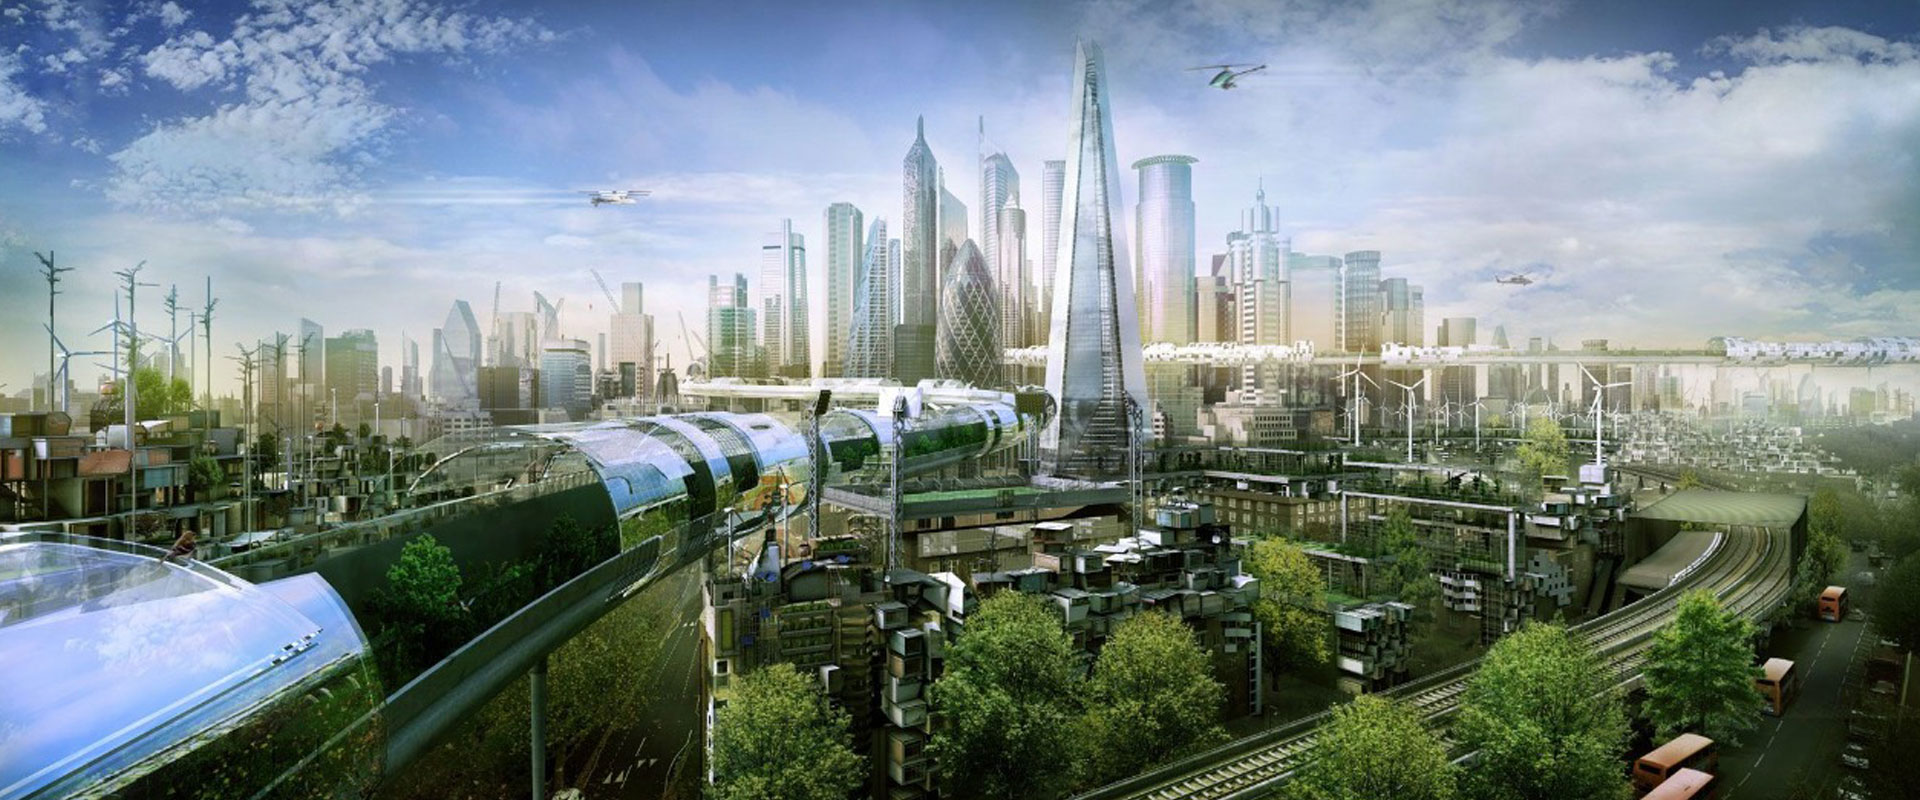 Коллаж город будущего